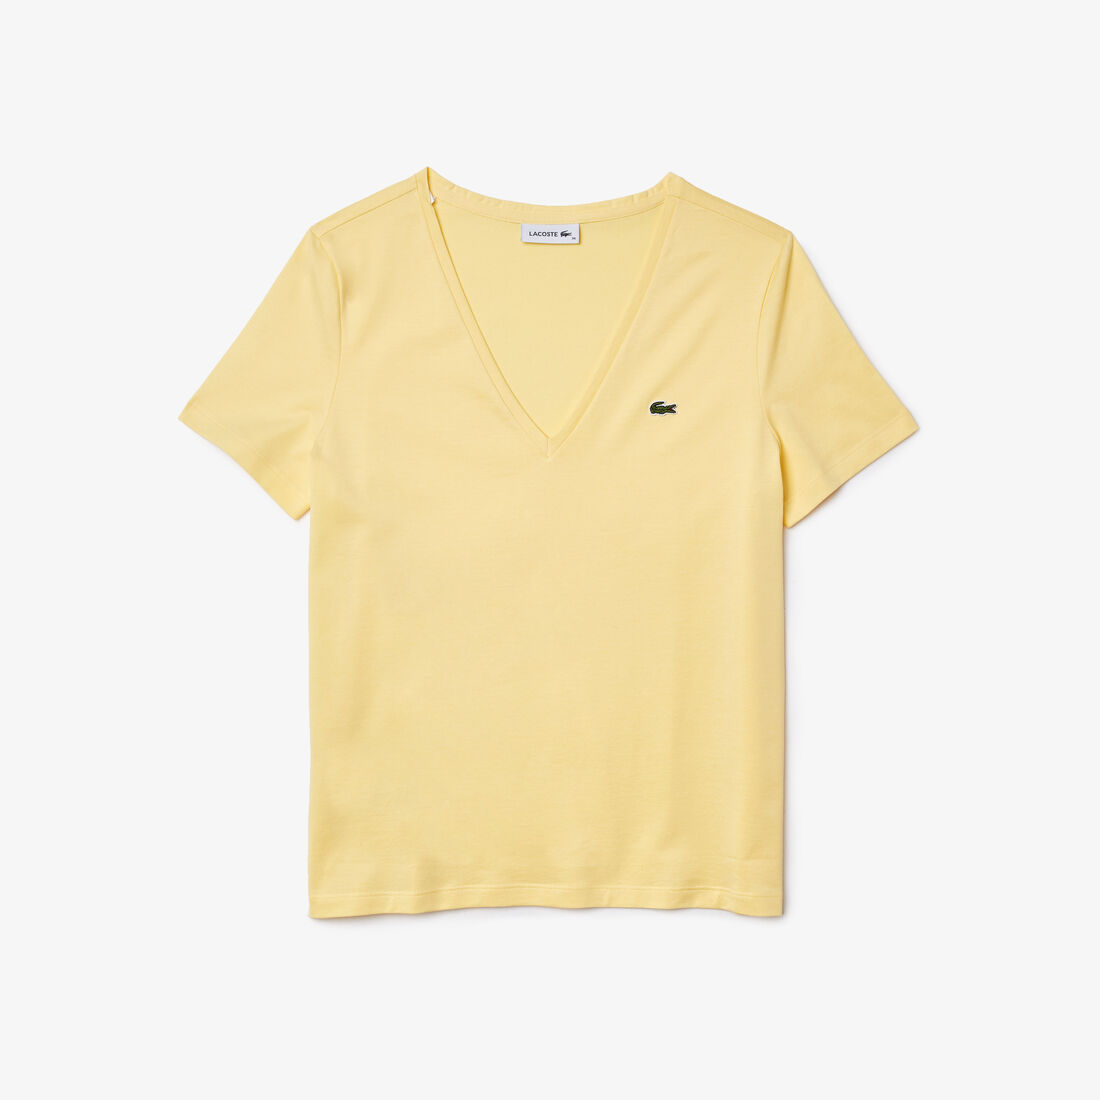 Women's V-neck Loose Fit Cotton T-shirt